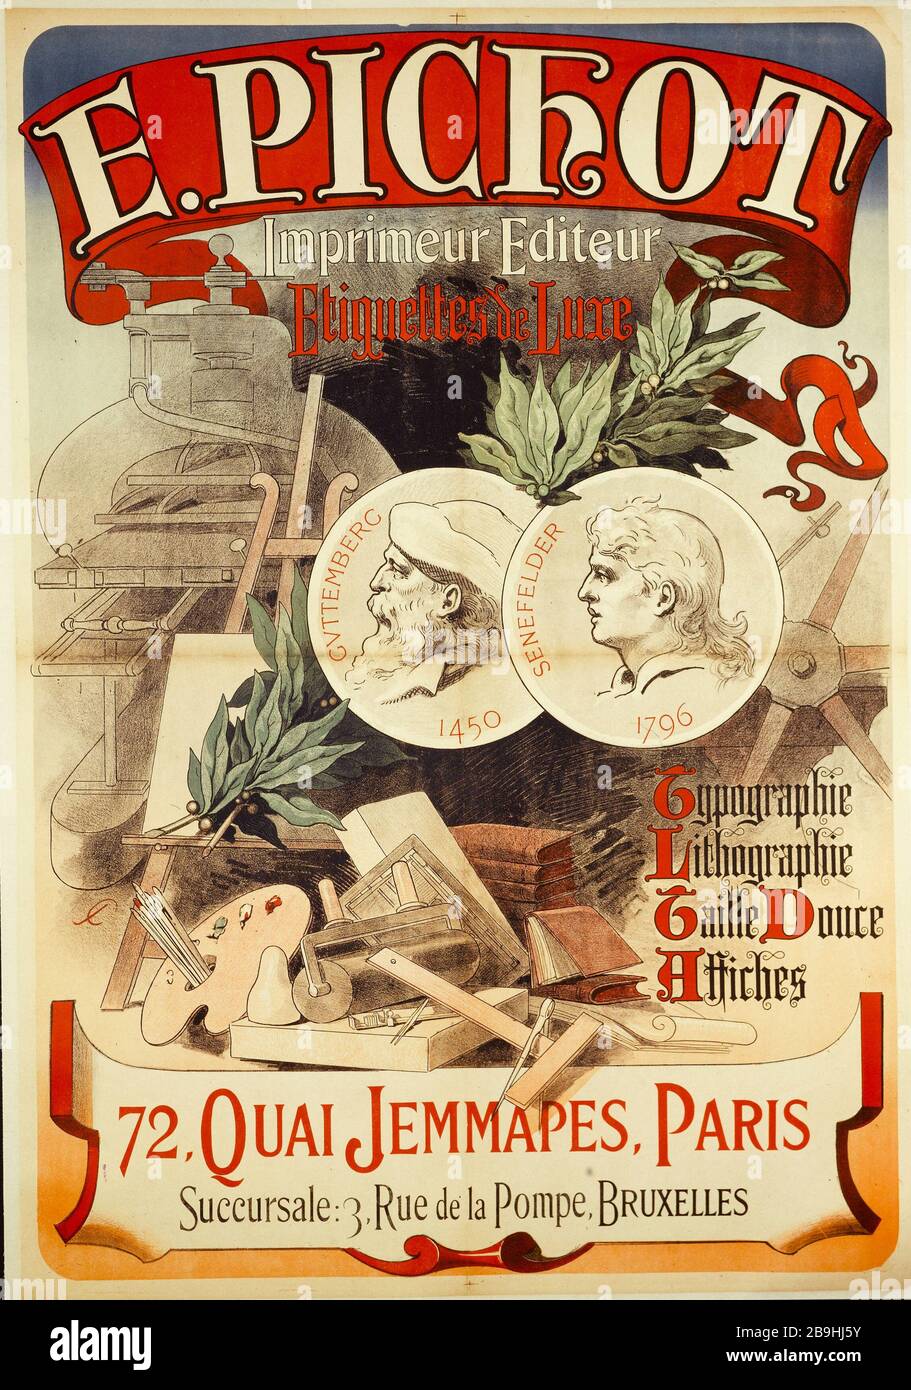 Affiches et posters - Léonie & France